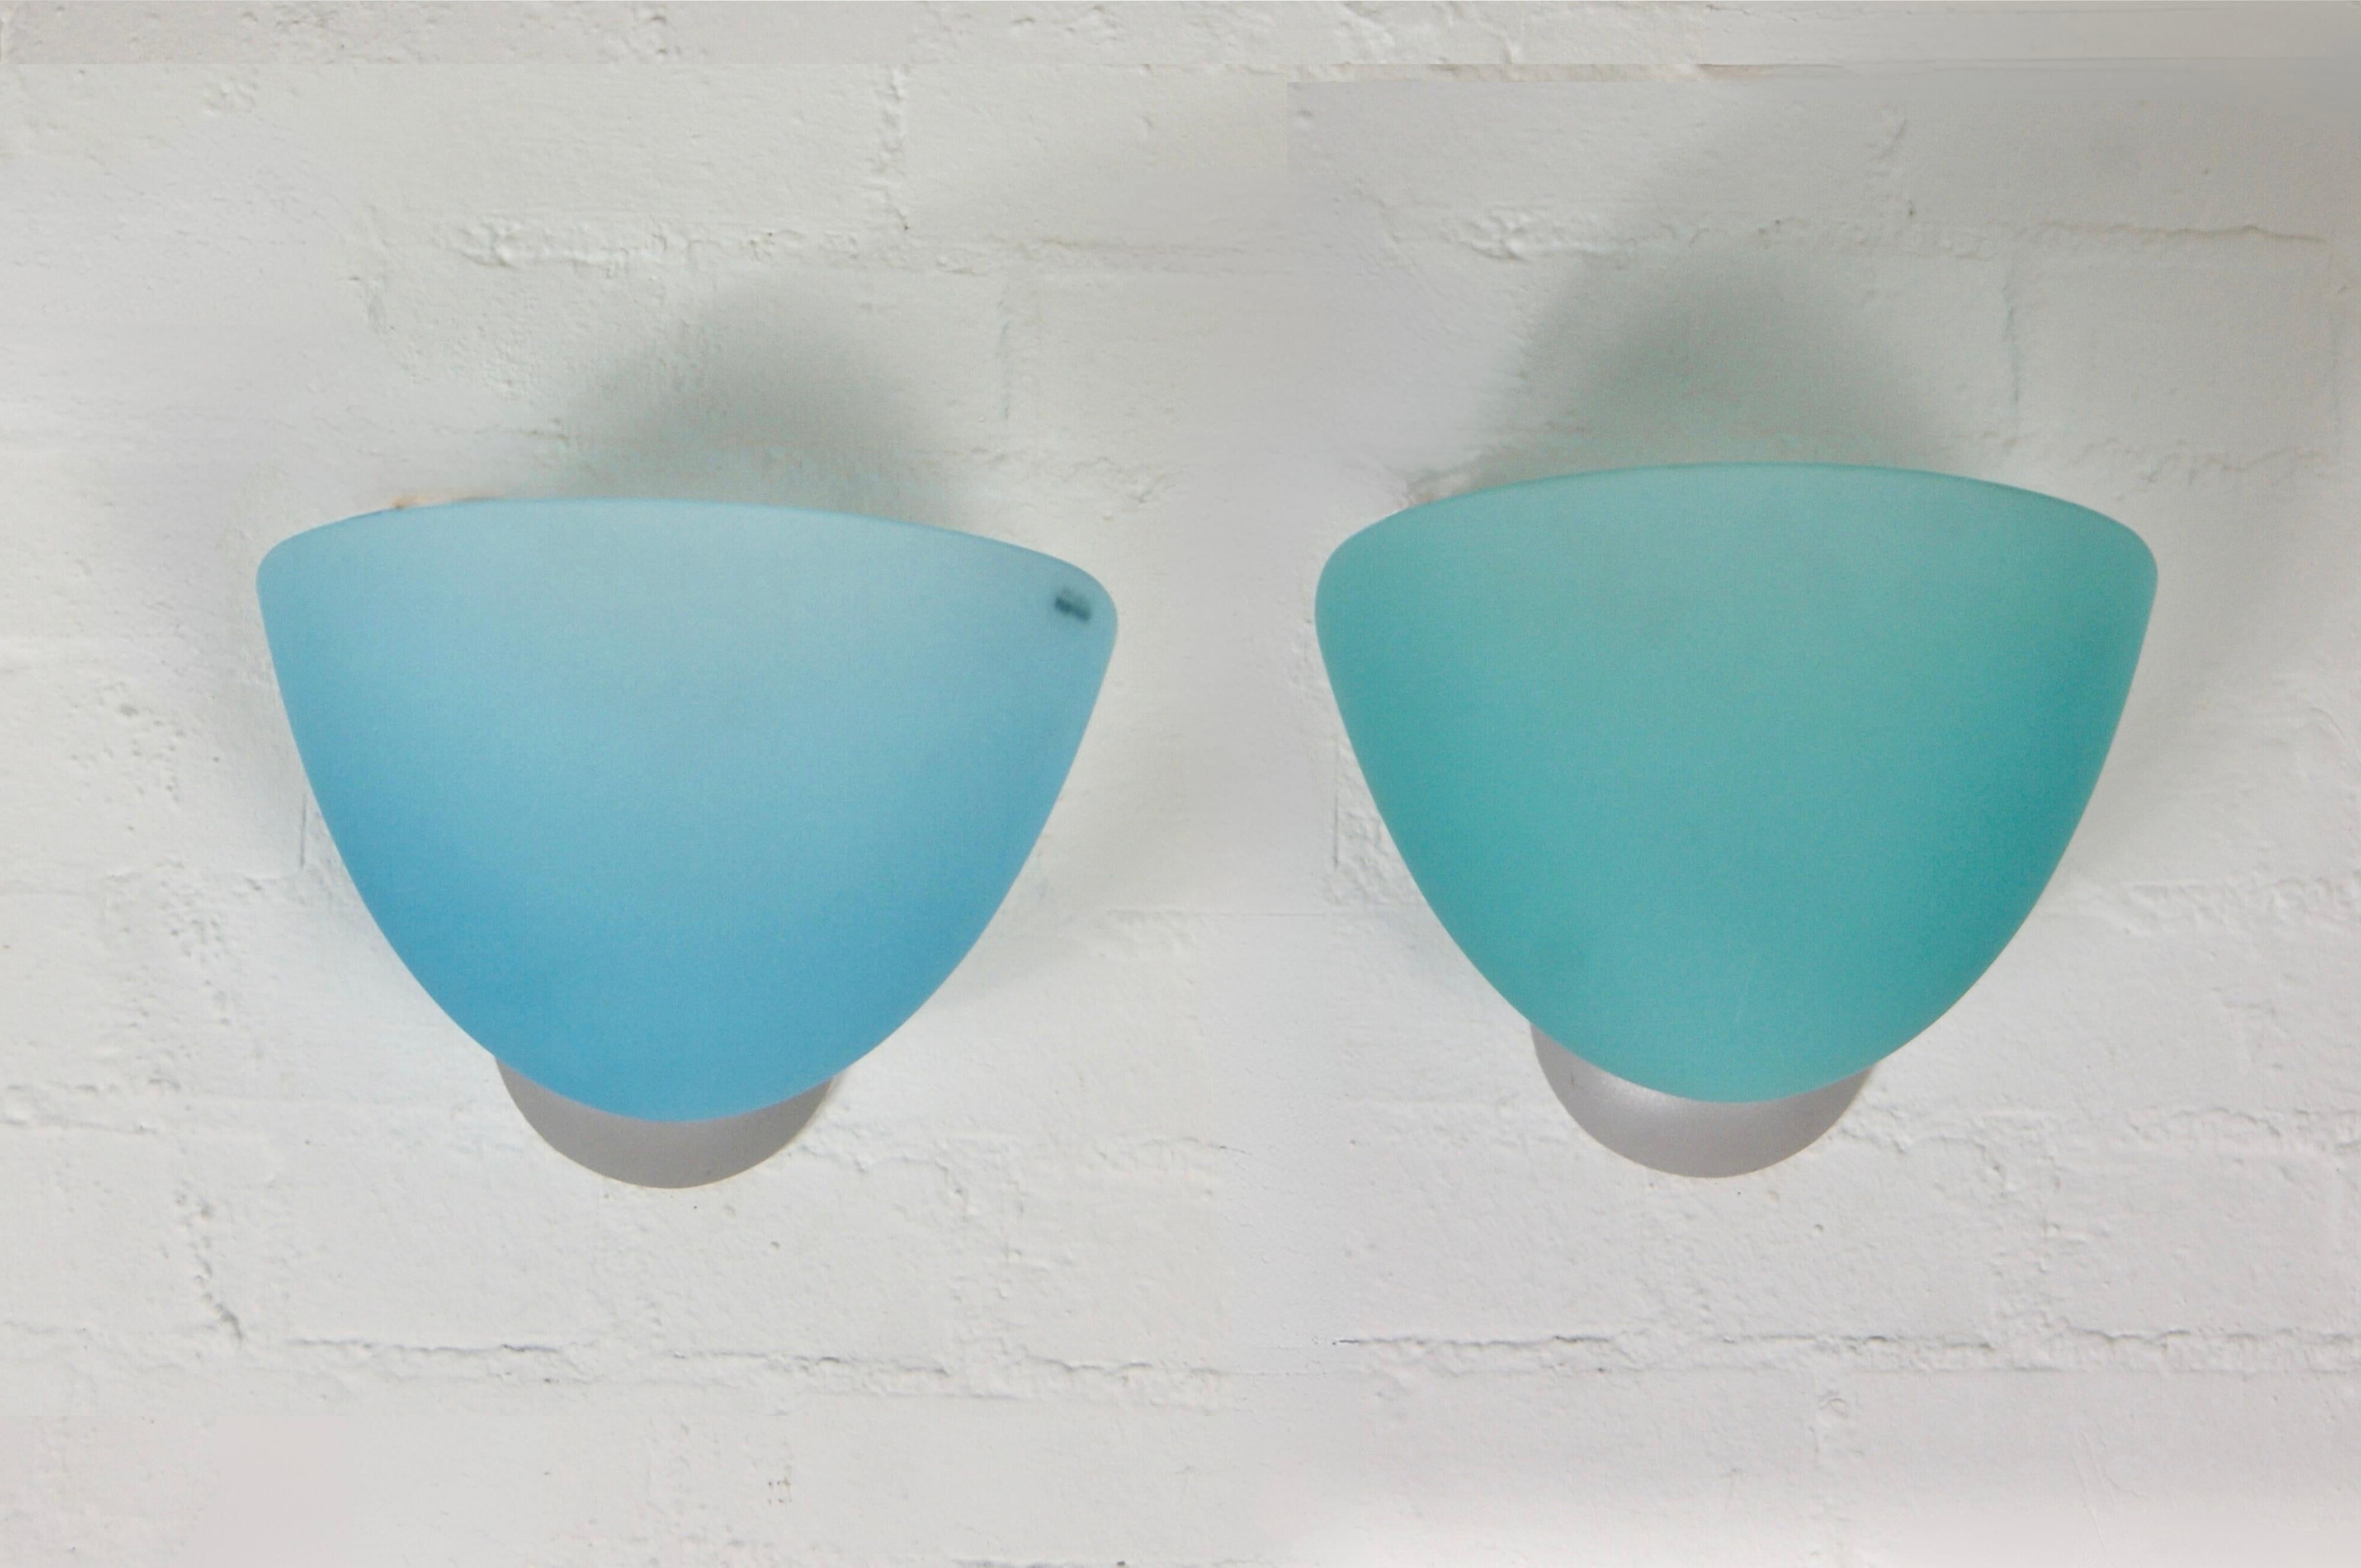 Paar italienische Wandleuchten aus Glas mit Label von AV MAZZEGA Murano, ca. 1980er Jahre.
Schöne mezza luna Wandlampen
Mit 3/4 Kugeln aus Milchglas in der Farbe Marinblau.
Die Diffusorfarben unterscheiden sich leicht, wenn sie nicht leuchten.